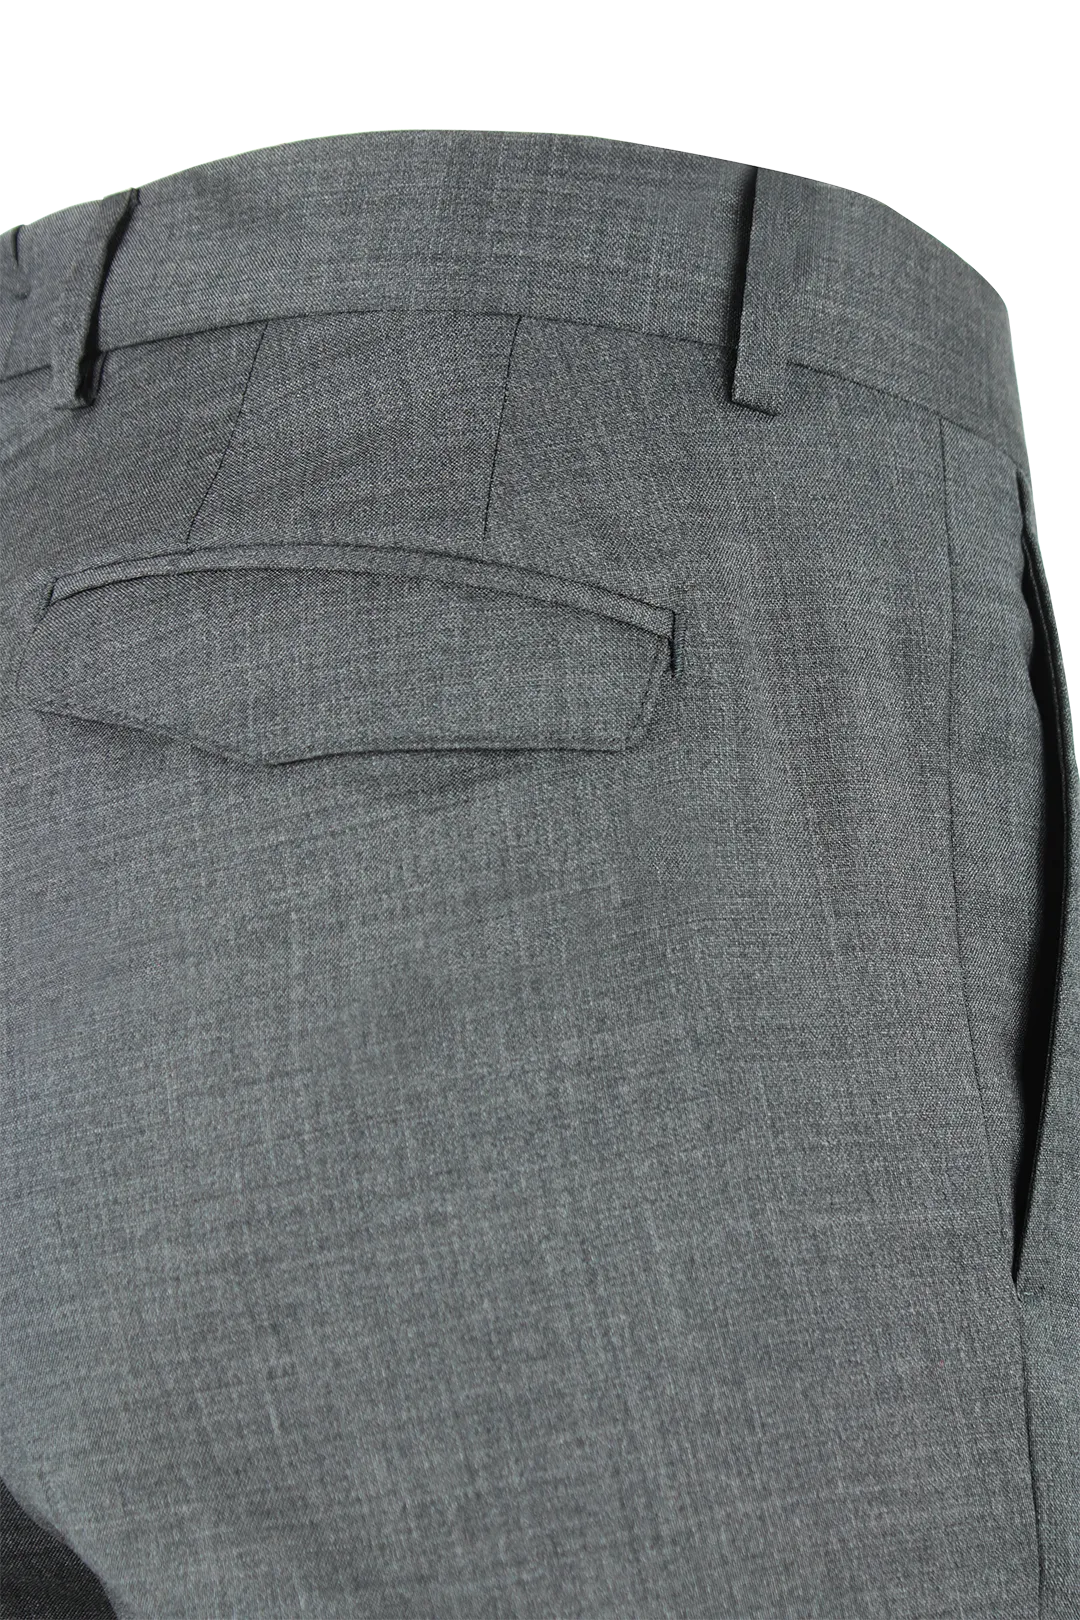 Pantalone risvolto tela di lana grigio medio patta